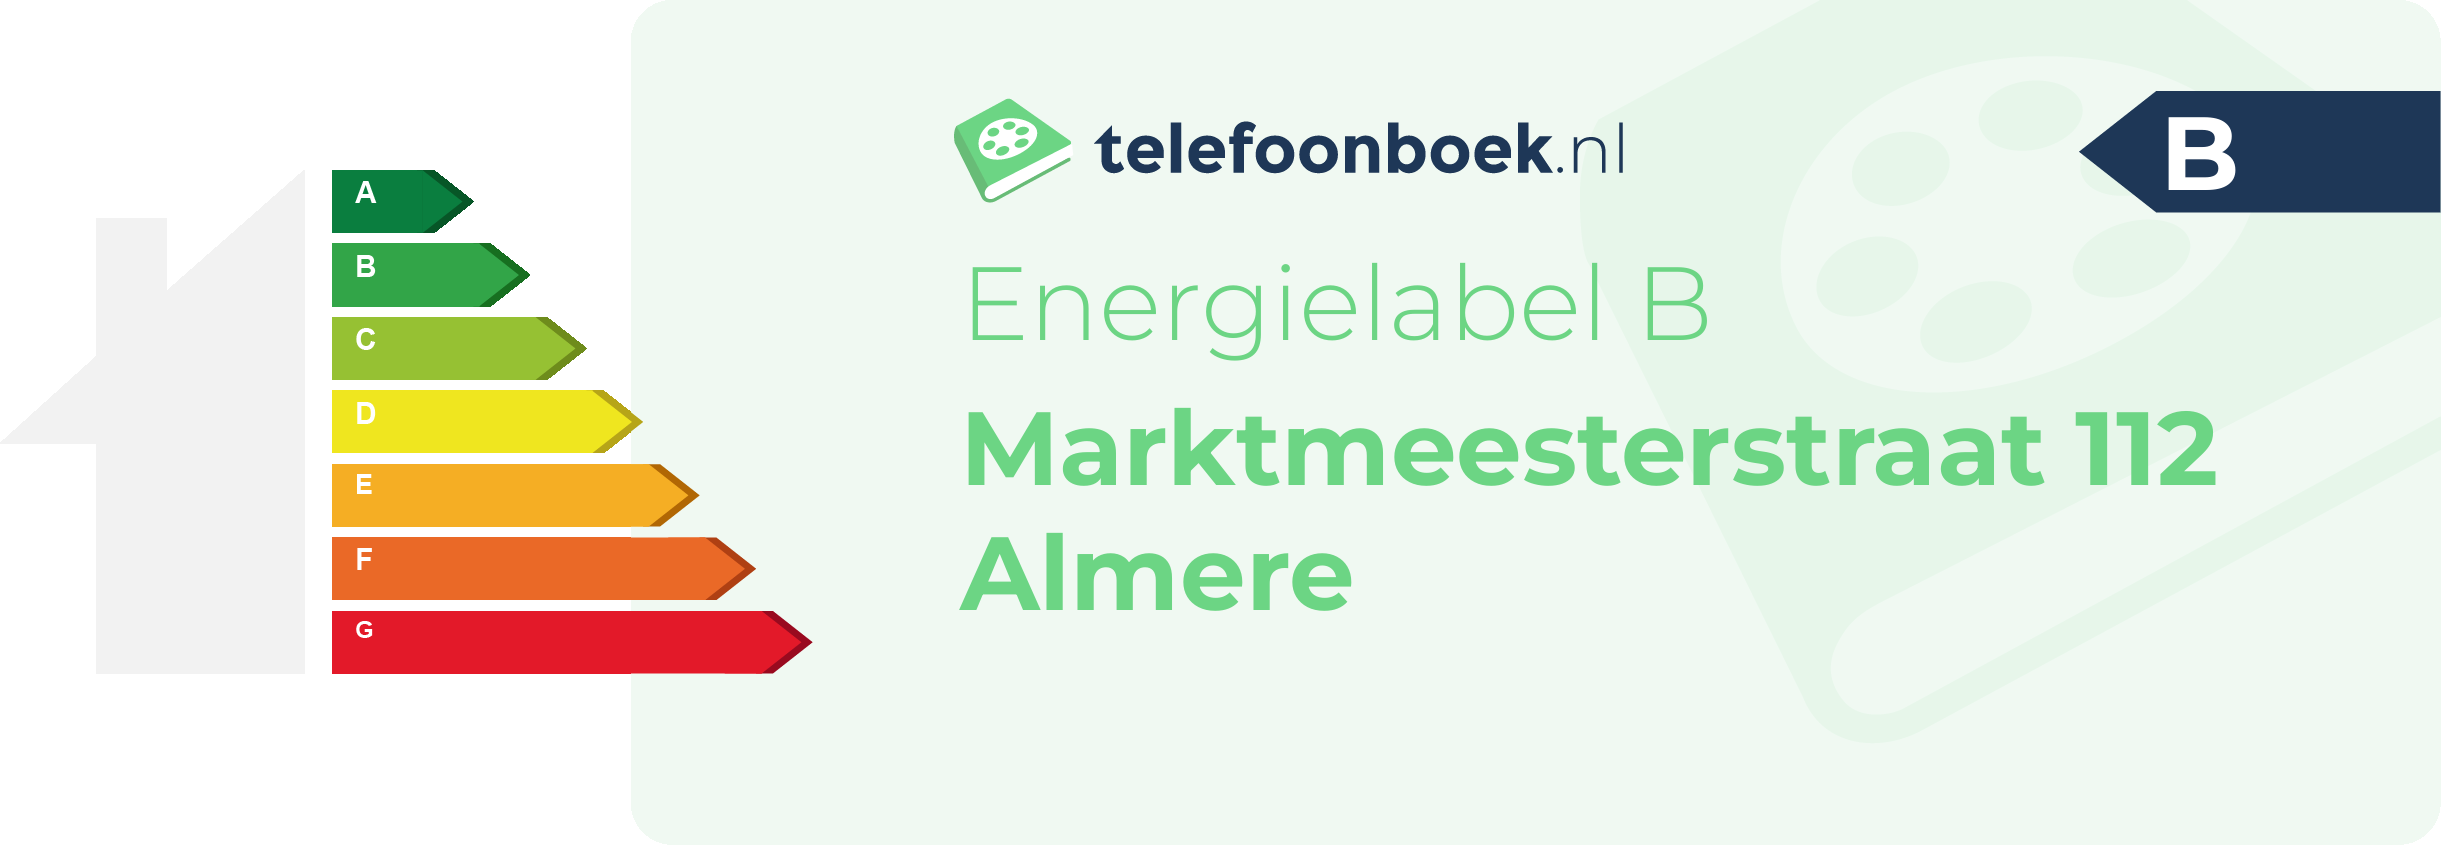 Energielabel Marktmeesterstraat 112 Almere